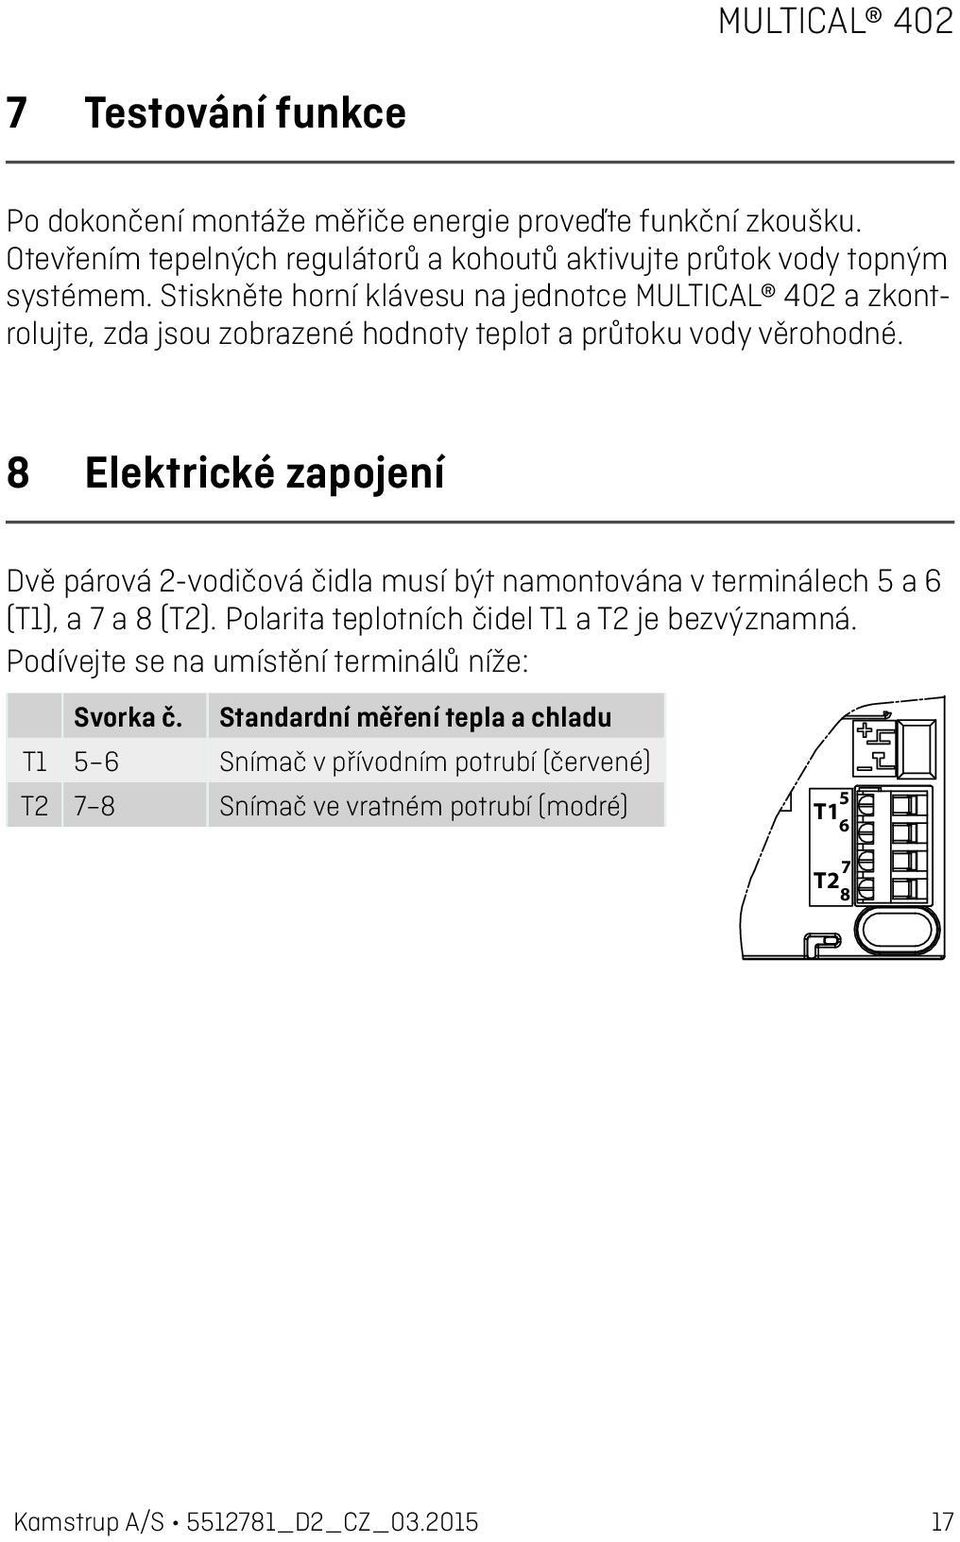 8 Elektrické zapojení Dvě párová 2-vodičová čidla musí být namontována v terminálech 5 a 6 (T1), a 7 a 8 (T2). Polarita teplotních čidel T1 a T2 je bezvýznamná.